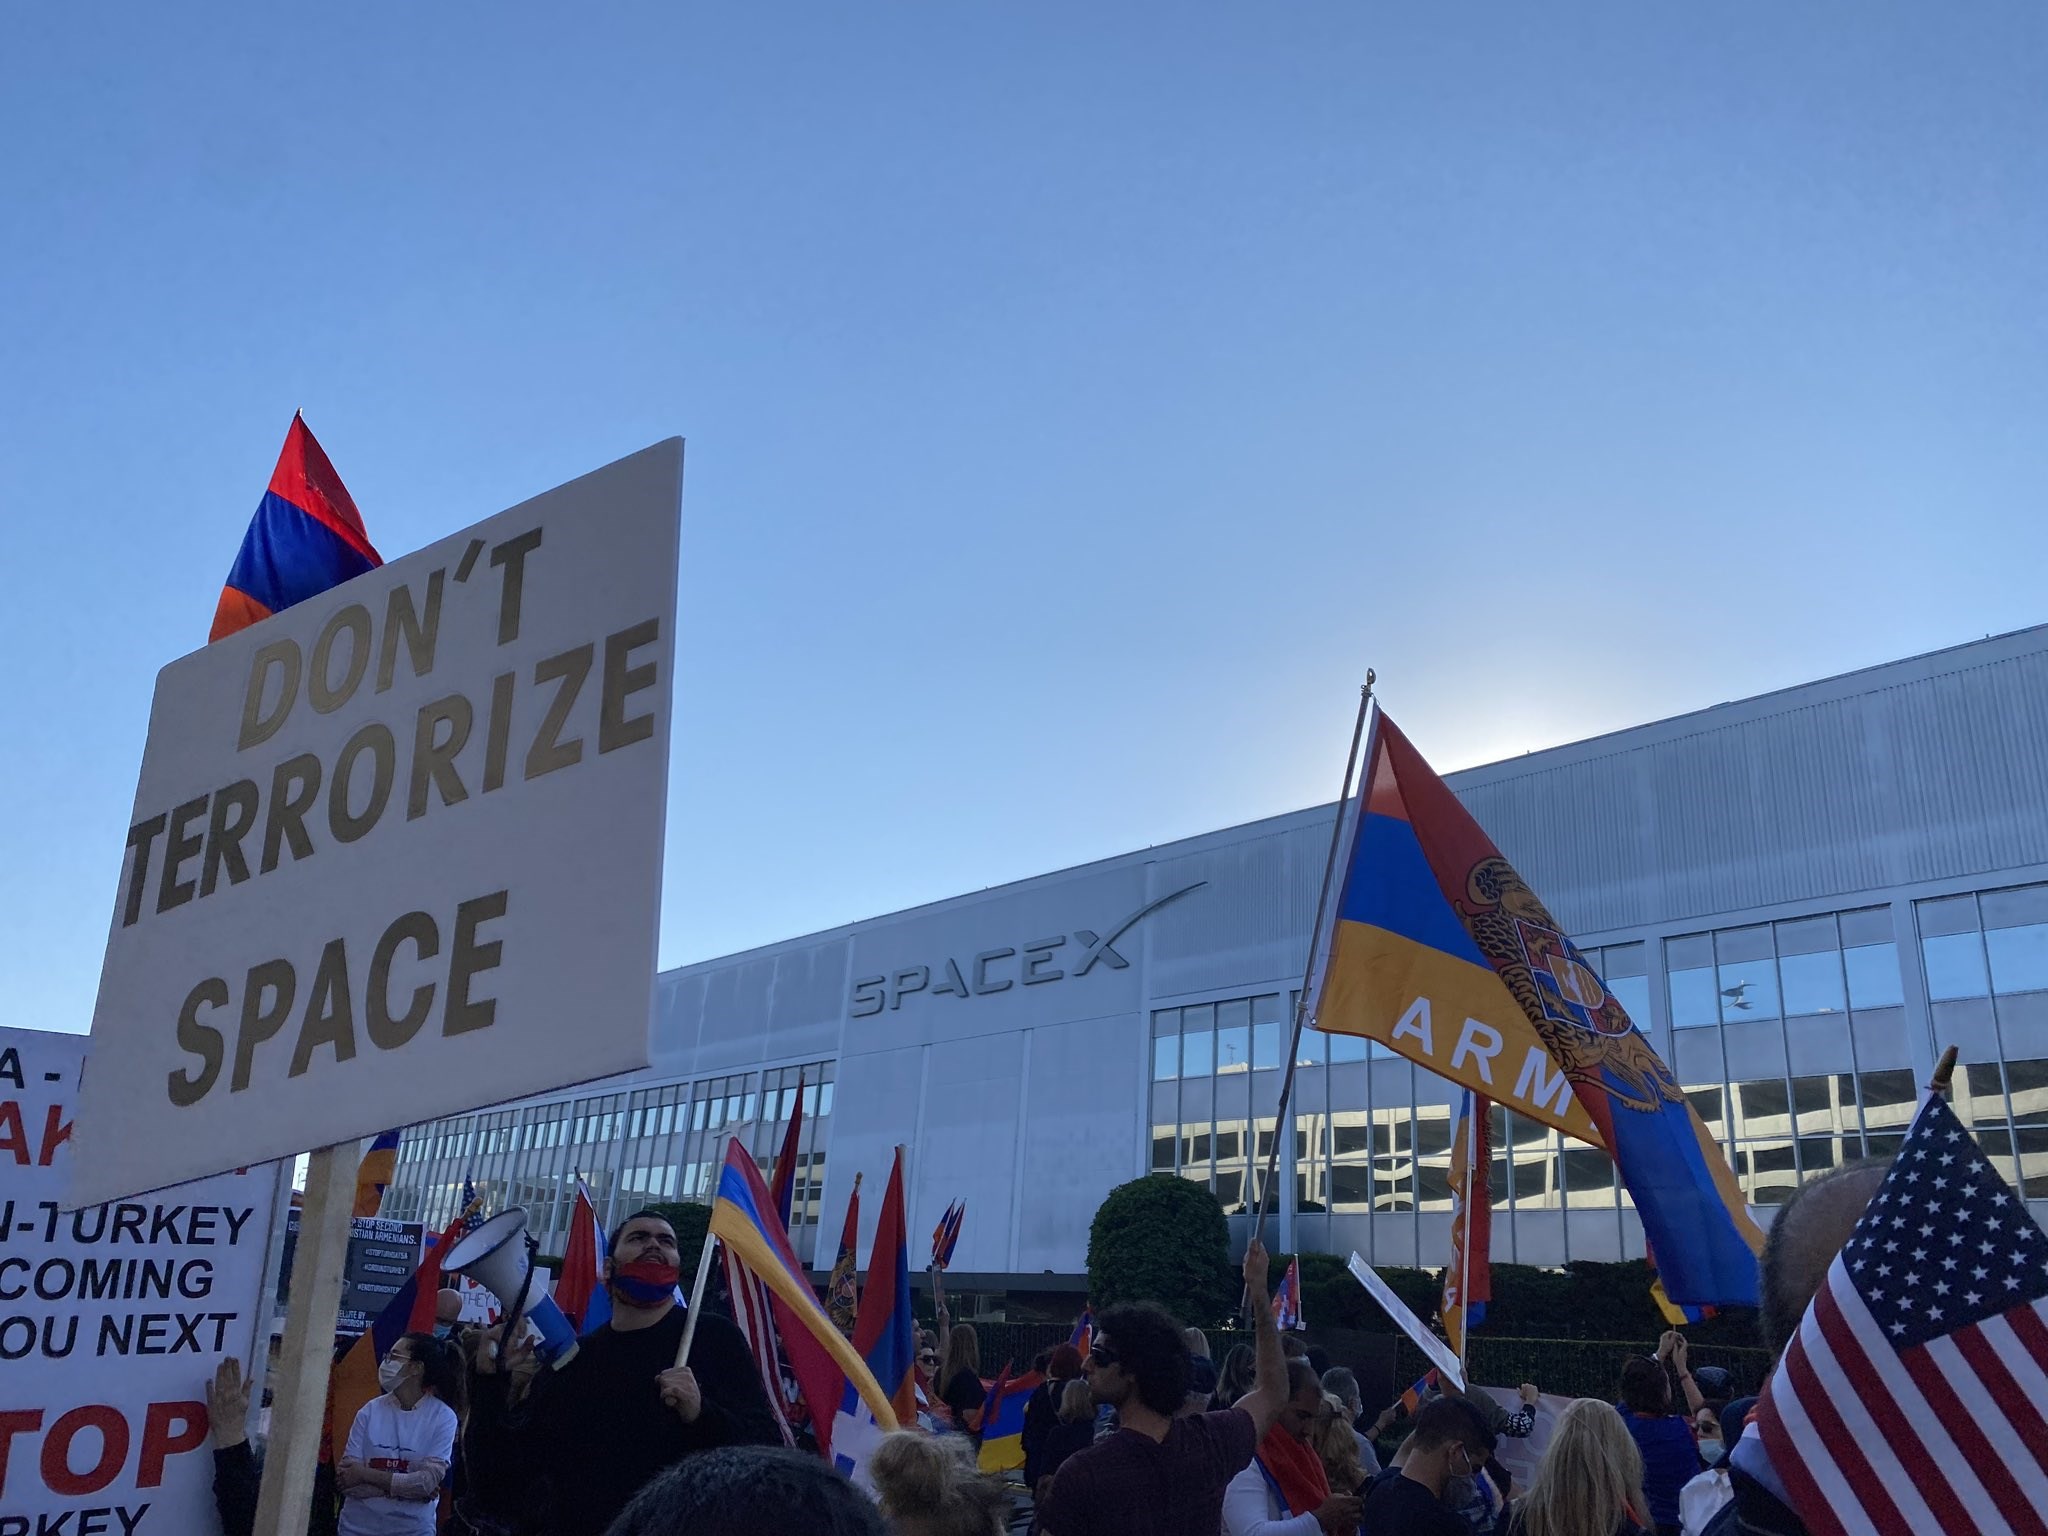 Ermeniler SpaceX genel merkezi önünde toplandı: Turksat 5A'yı protesto ediyorlar